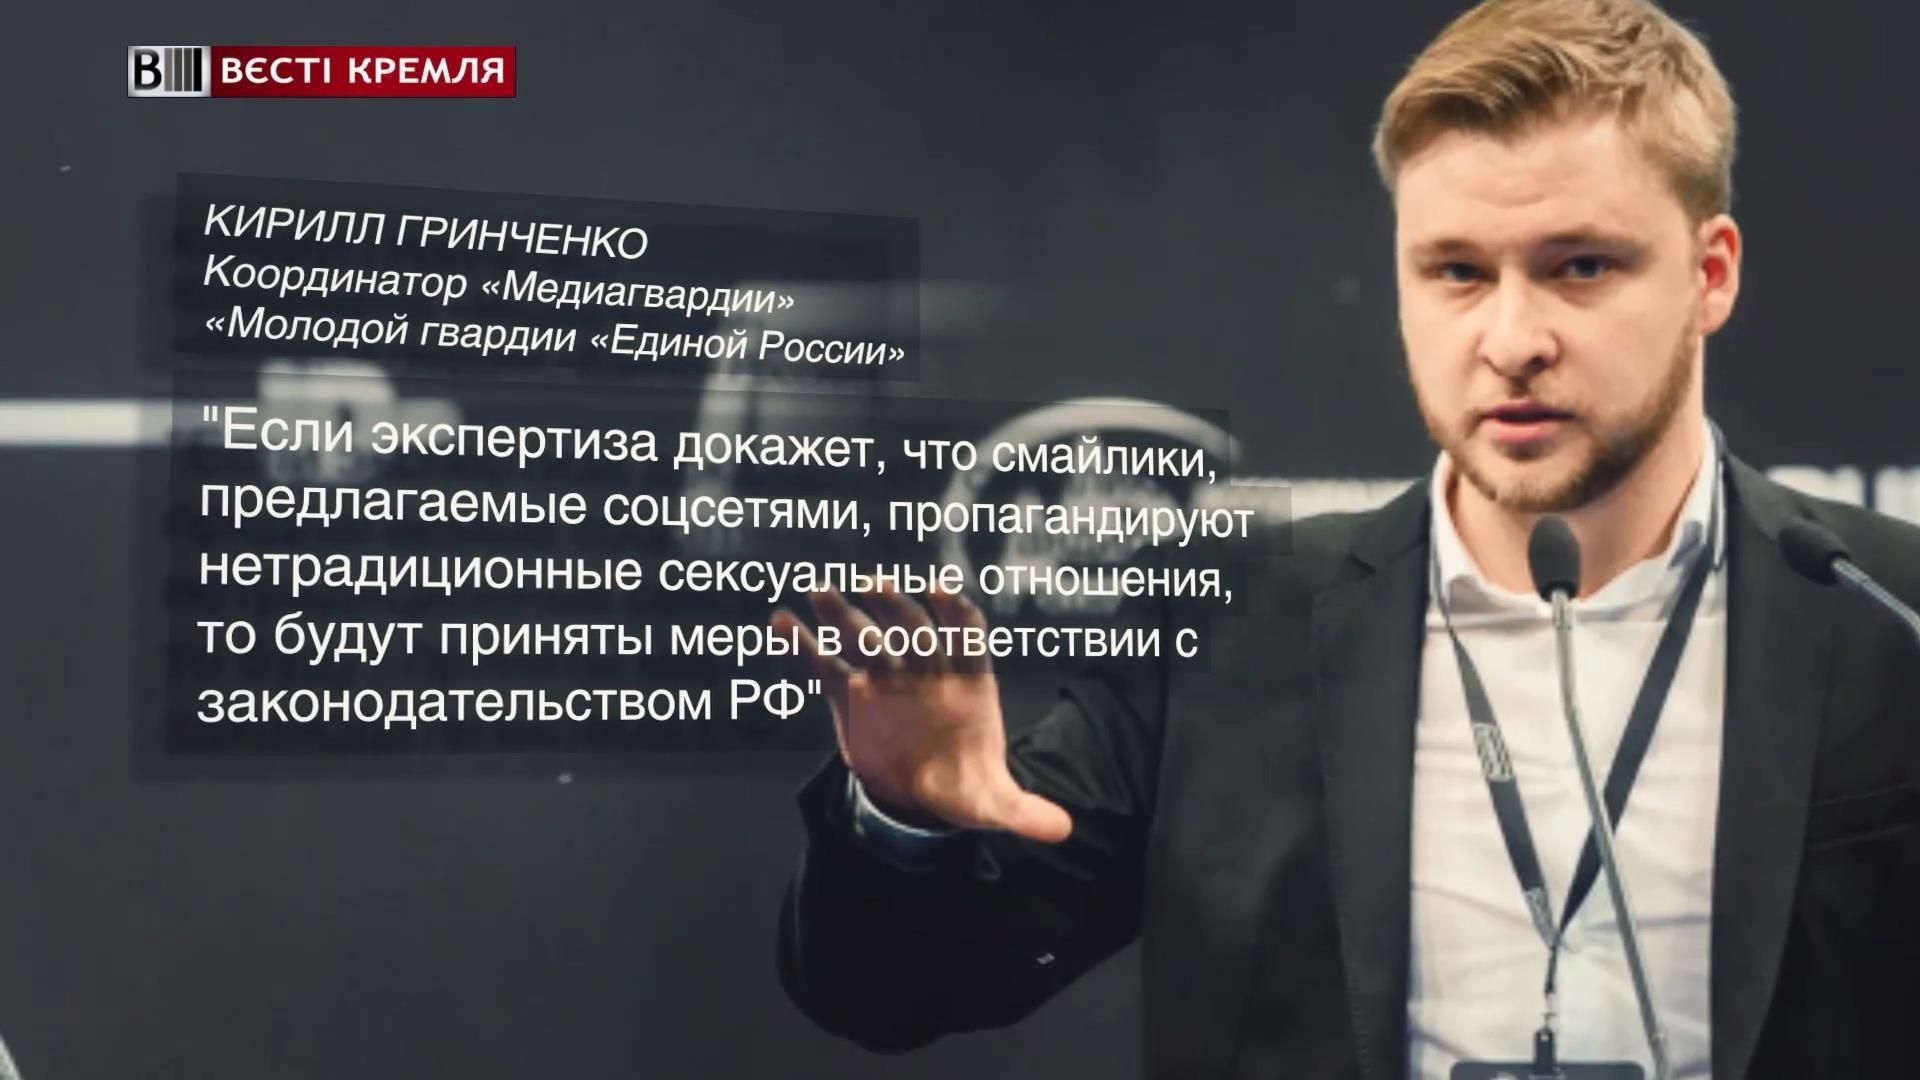 Росіяни підозрюють смайли у соцмережах в пропаганді гомосексуалізму